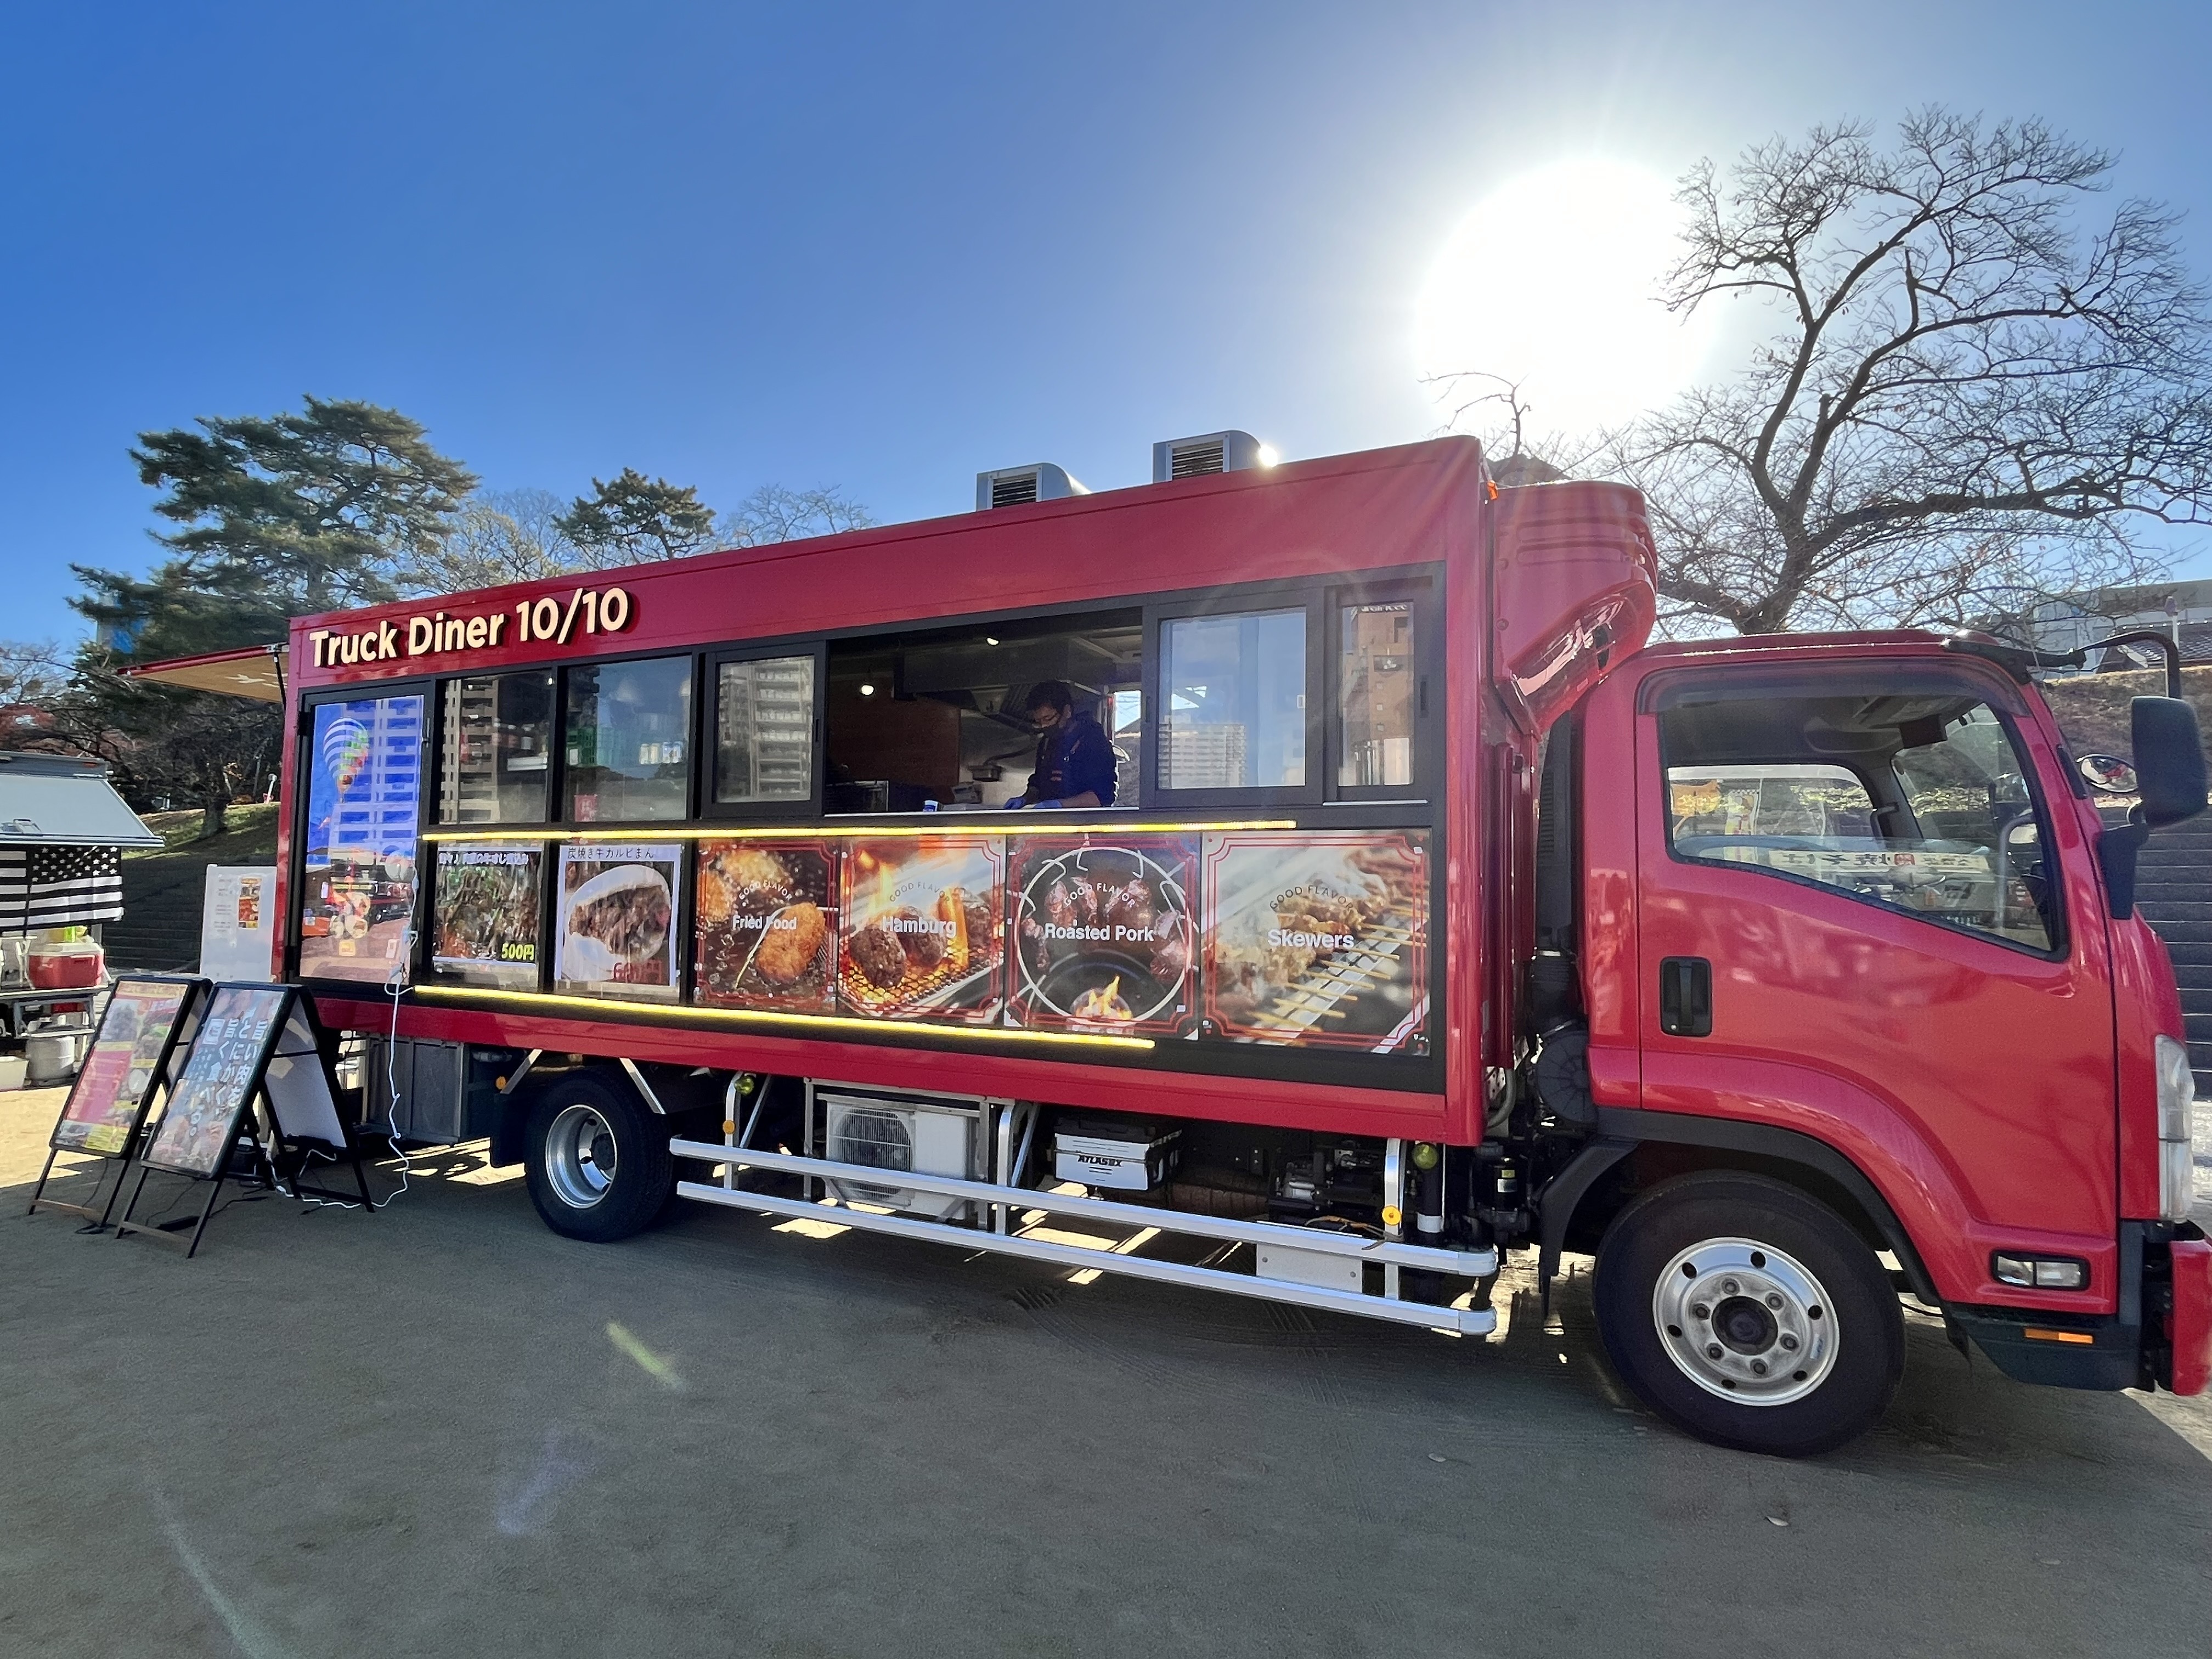 肉屋直営の本格的肉料理があなたの町に！走る肉屋
「TruckDiner10/10(トラックダイナージュージュー)」が
活動拠点を拡大＆イベント出店依頼受付開始！